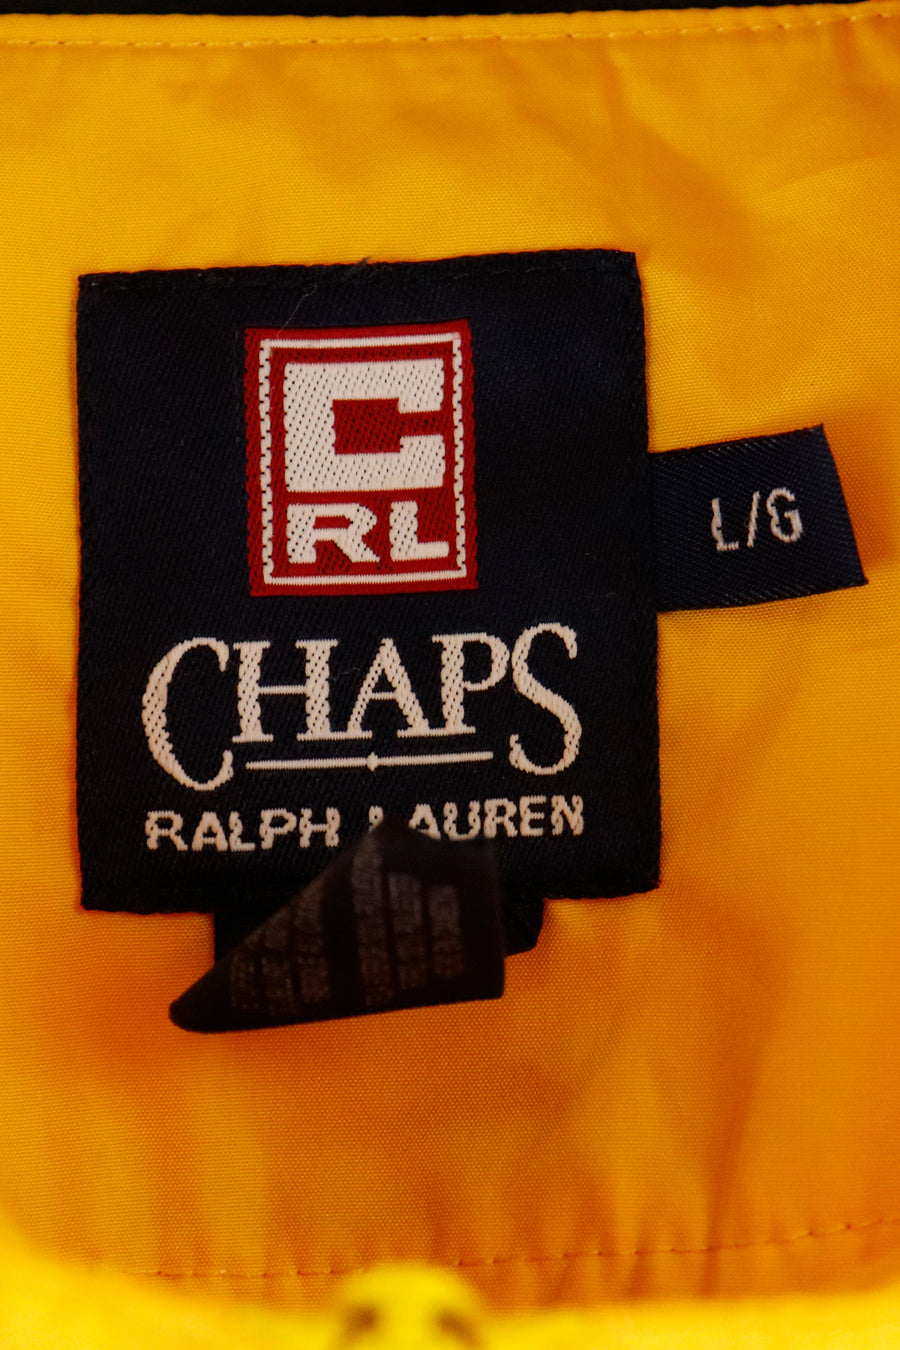 Chaps by Ralph Lauren 100 ml Eau de Cologne Spray for Men